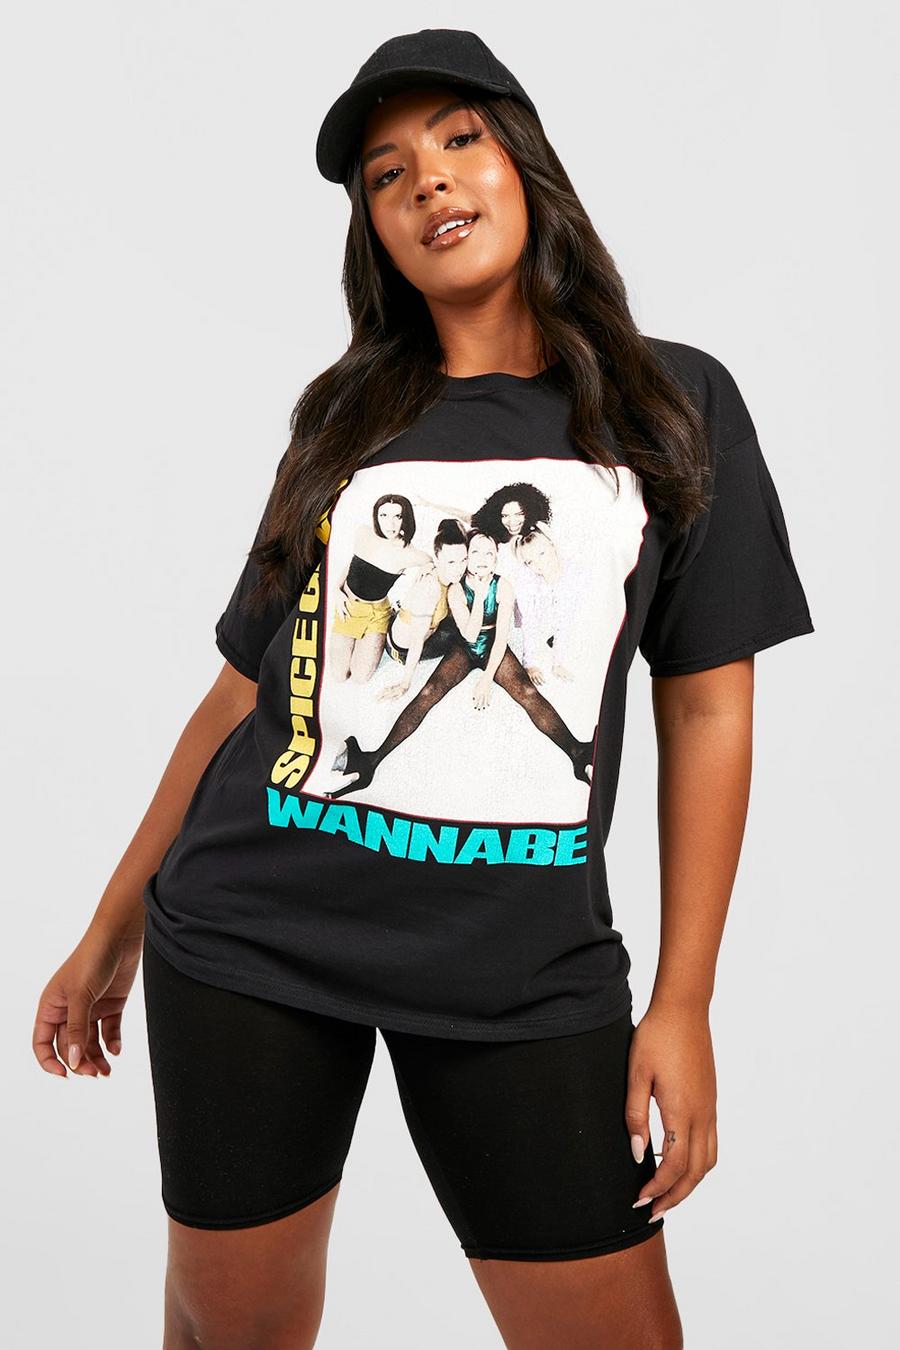 T-shirt Plus Size ufficiale Spice Girls Wannabe, Black negro